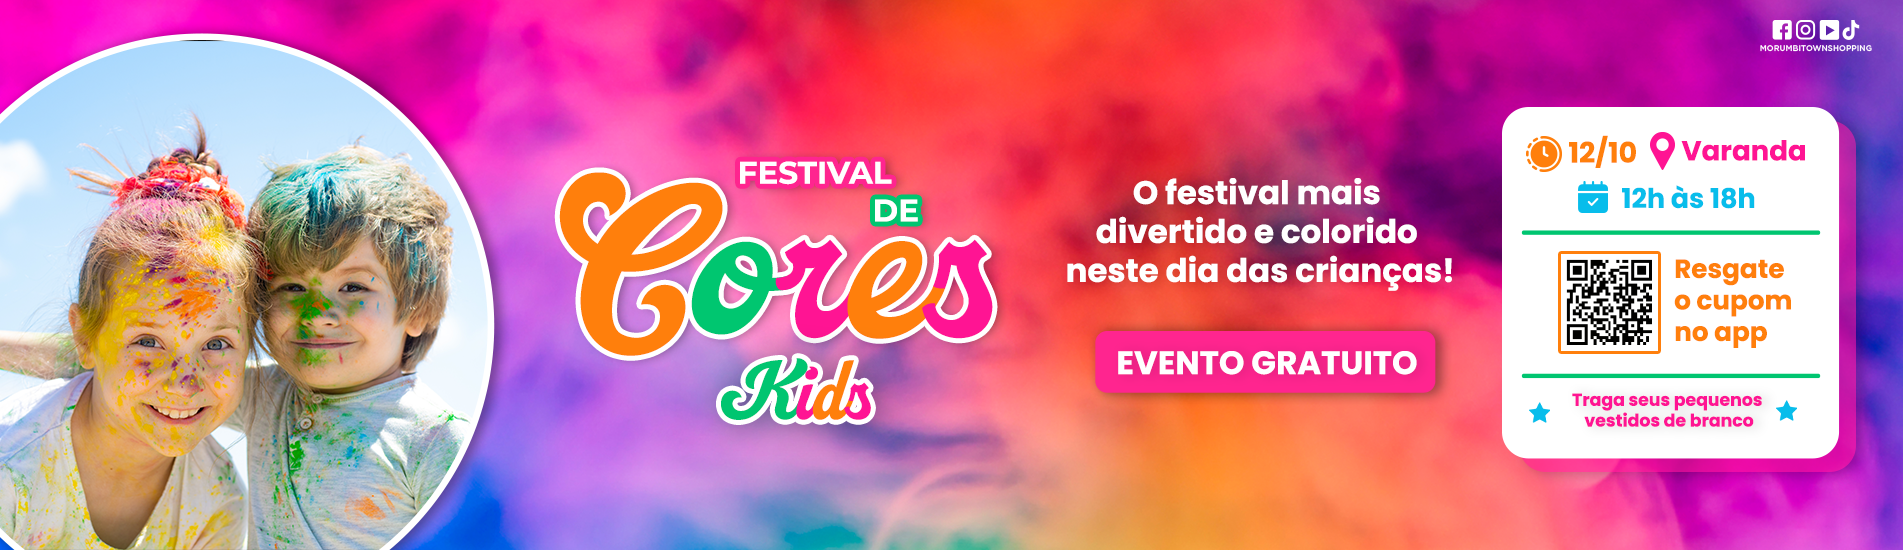 Festival de Cores Kids